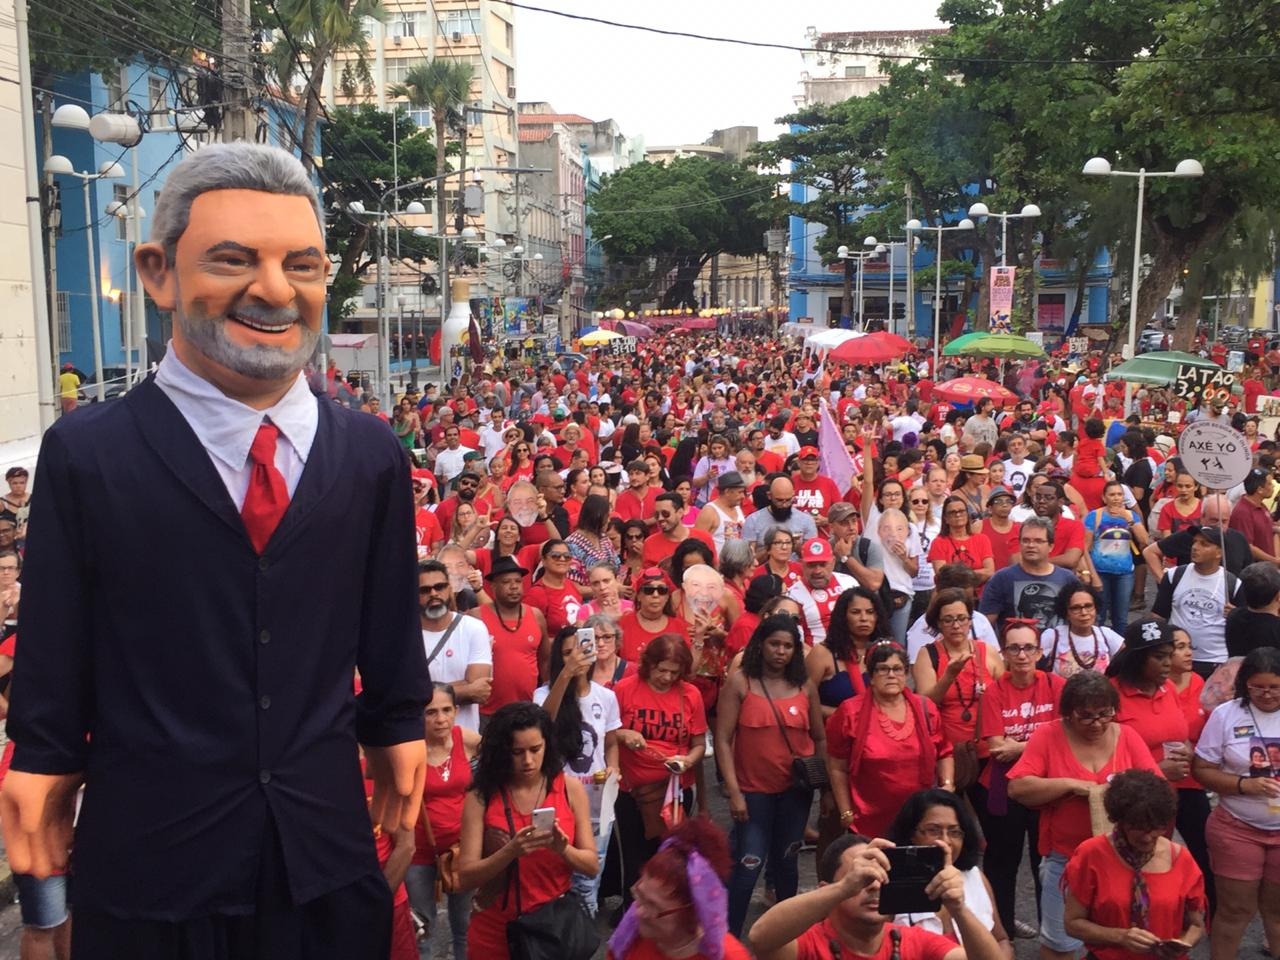 Blocos de carnaval animaram a manifestação em Recife. (Foto: Denilson Cadête